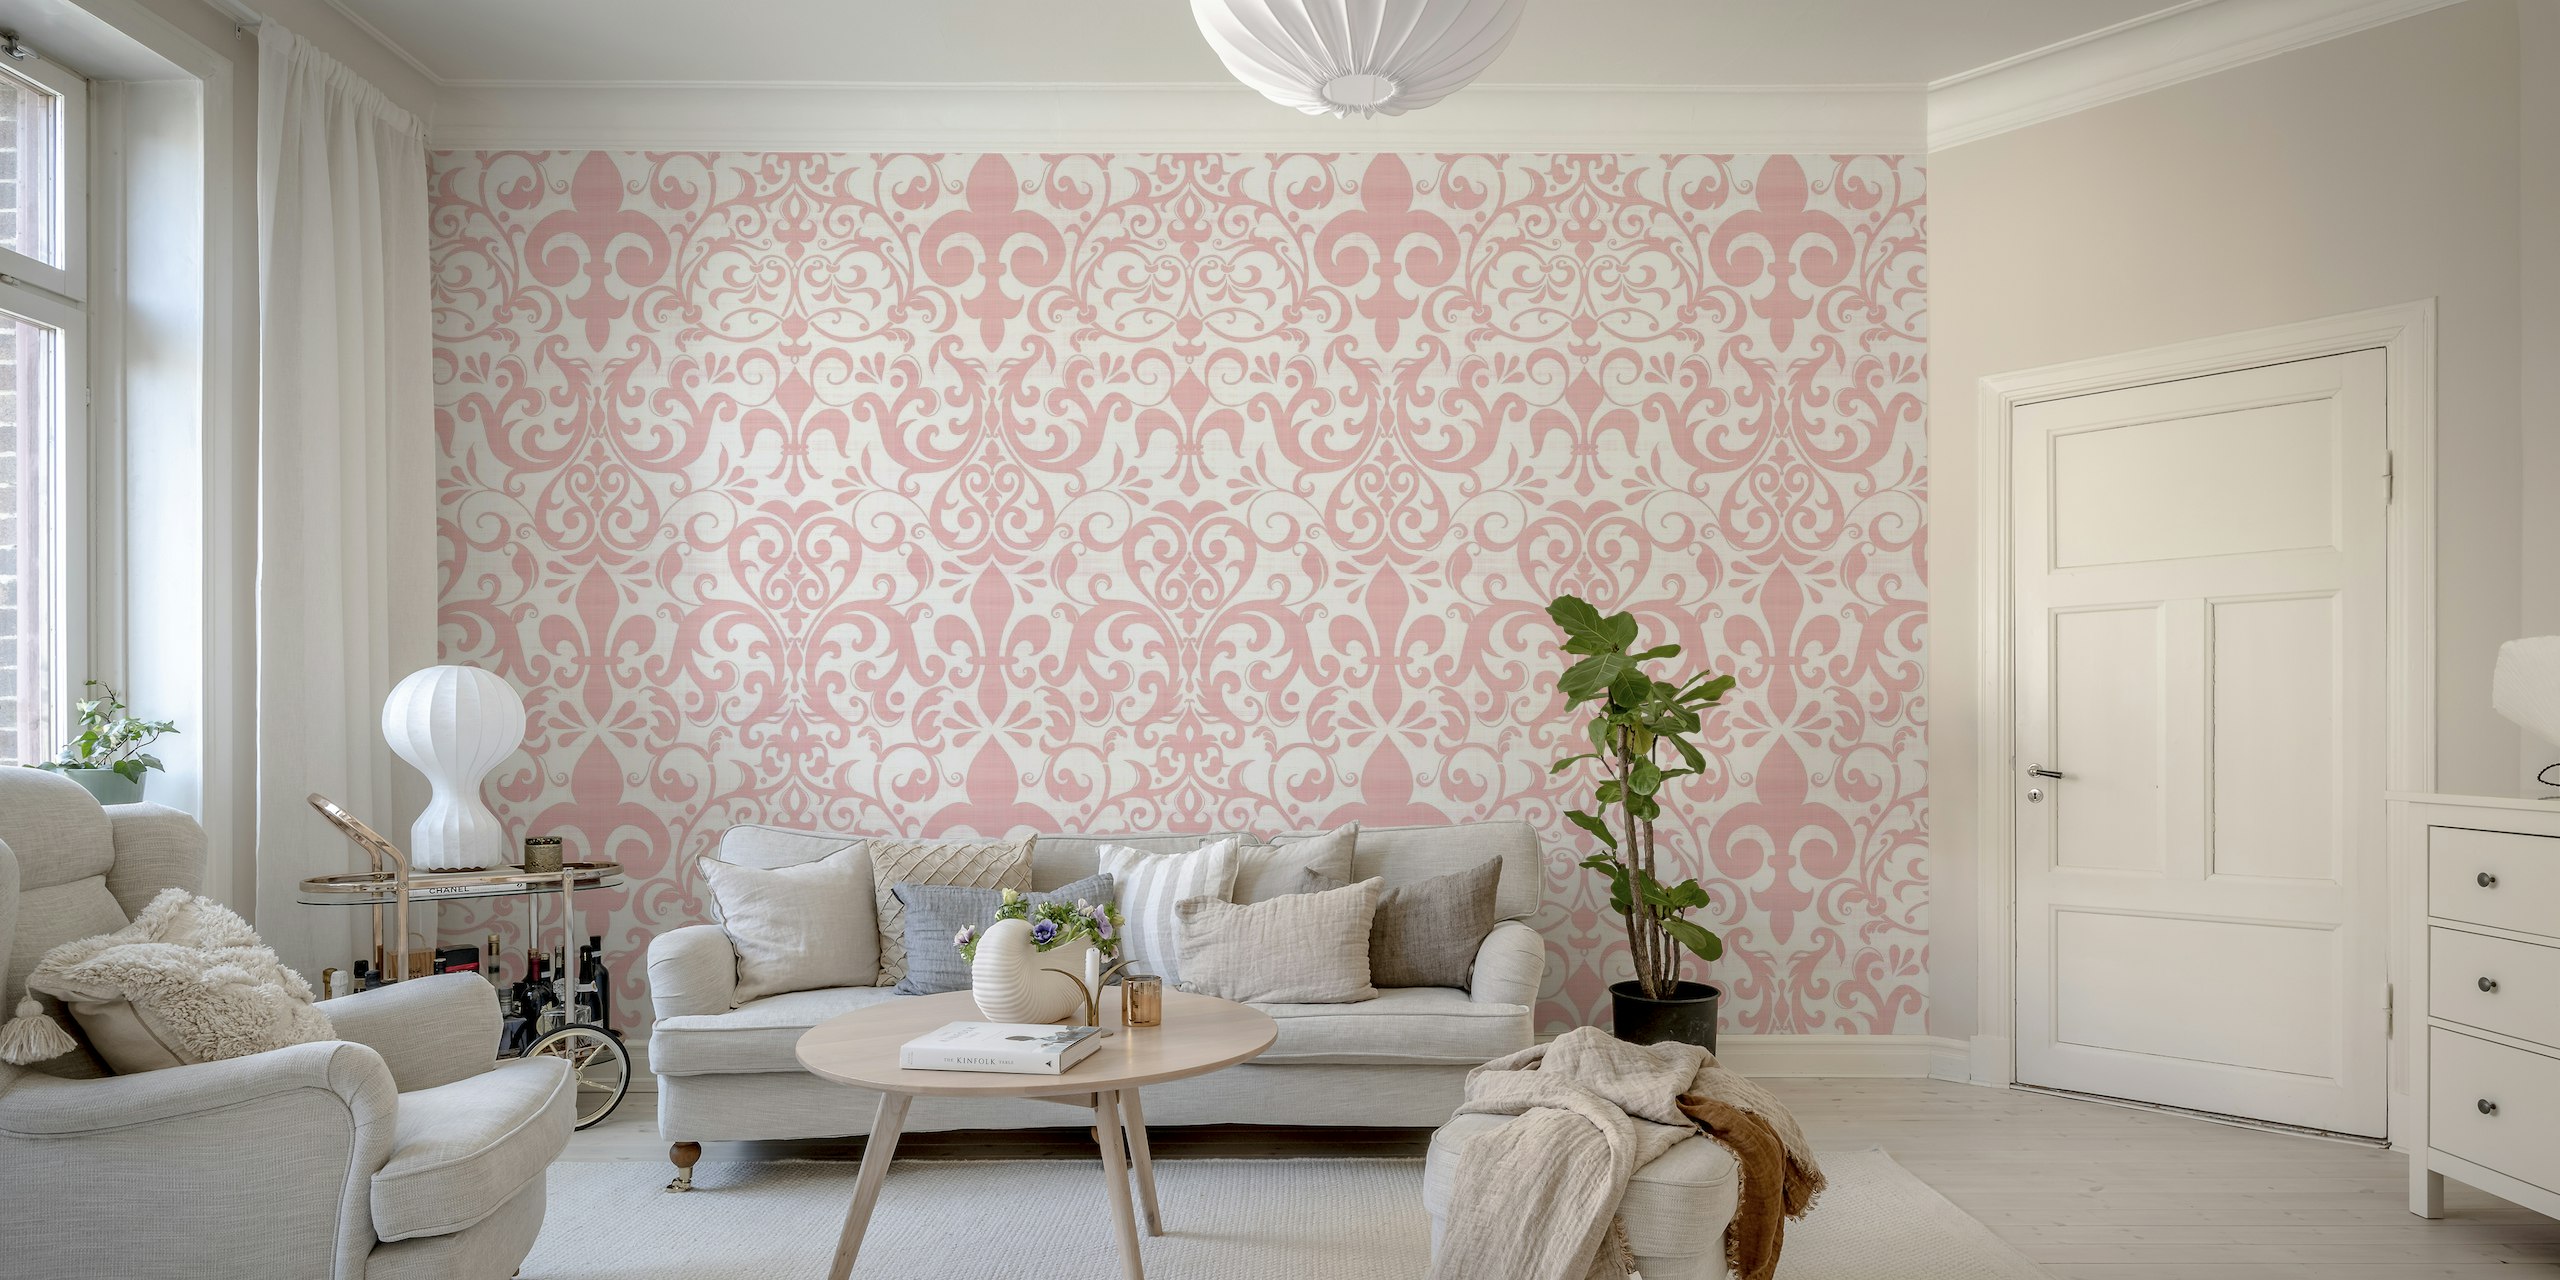 Papier peint rose pastel avec un motif classique de fleur de lys et de volutes pour un look lin français.